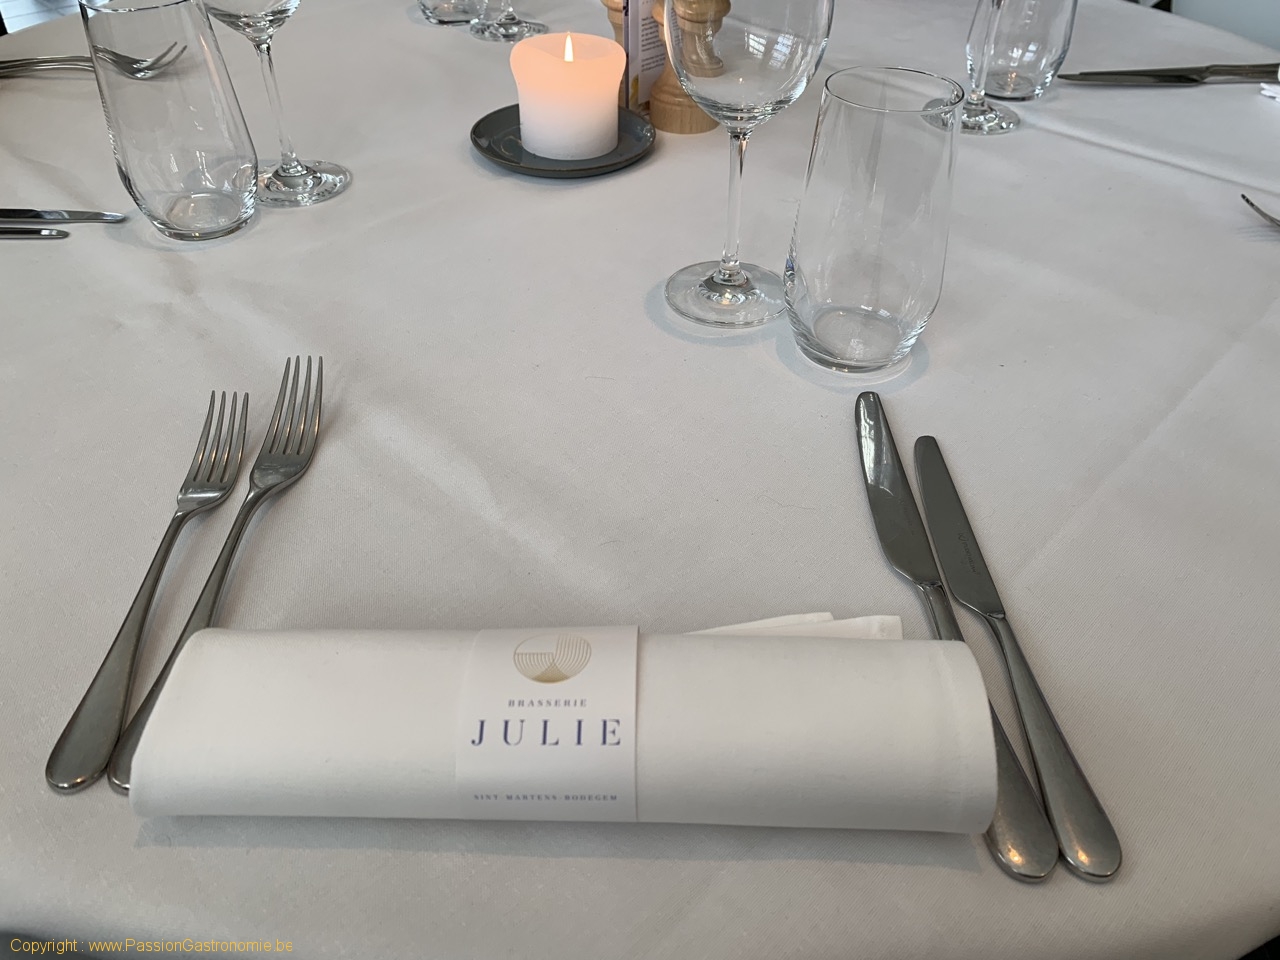 Brasserie Julie - La table